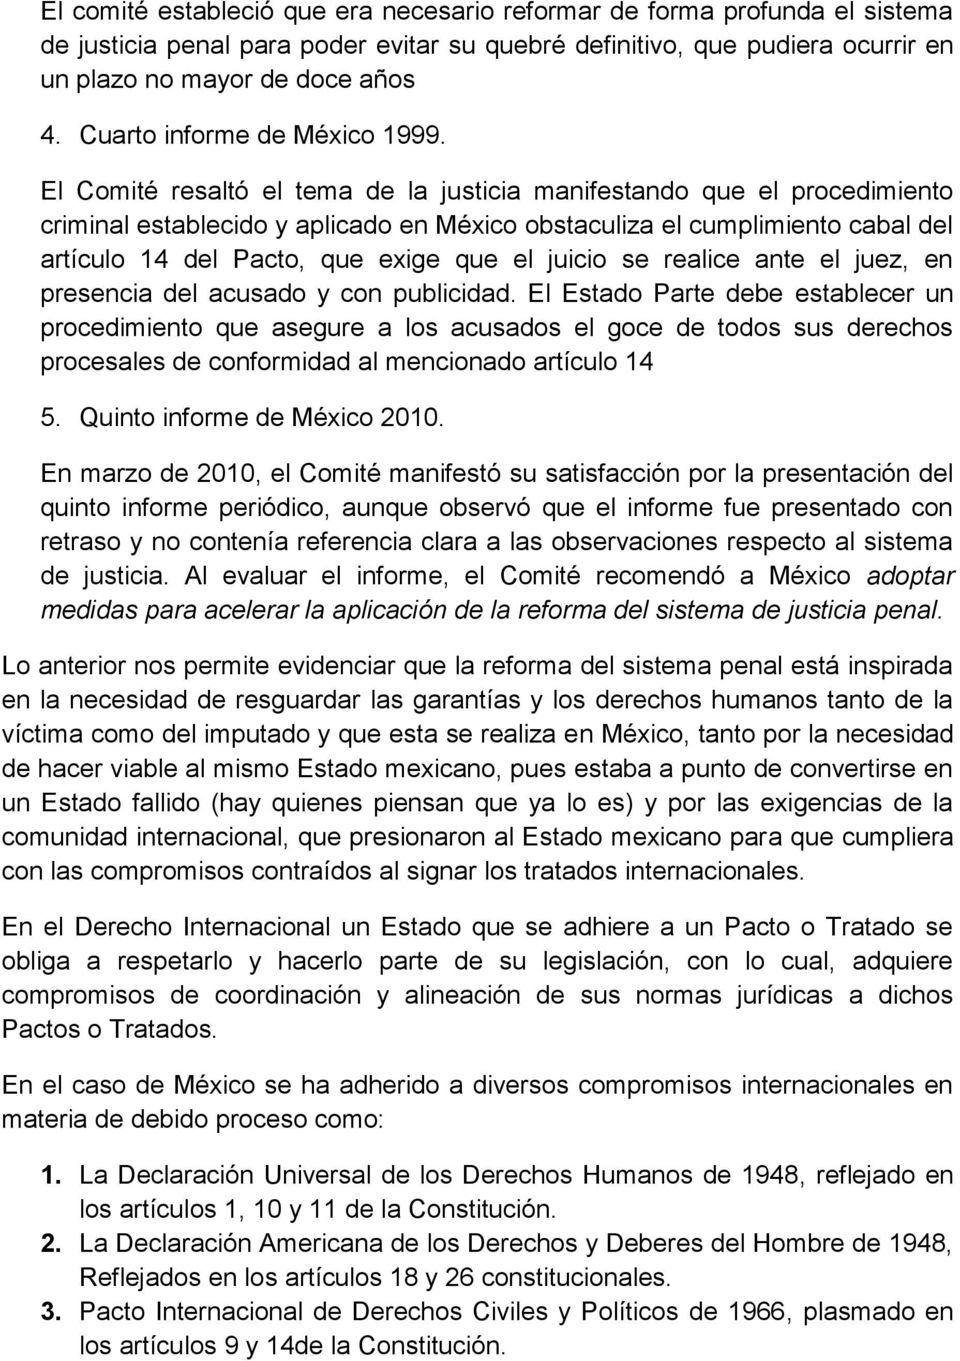 El Comité resaltó el tema de la justicia manifestando que el procedimiento criminal establecido y aplicado en México obstaculiza el cumplimiento cabal del artículo 14 del Pacto, que exige que el